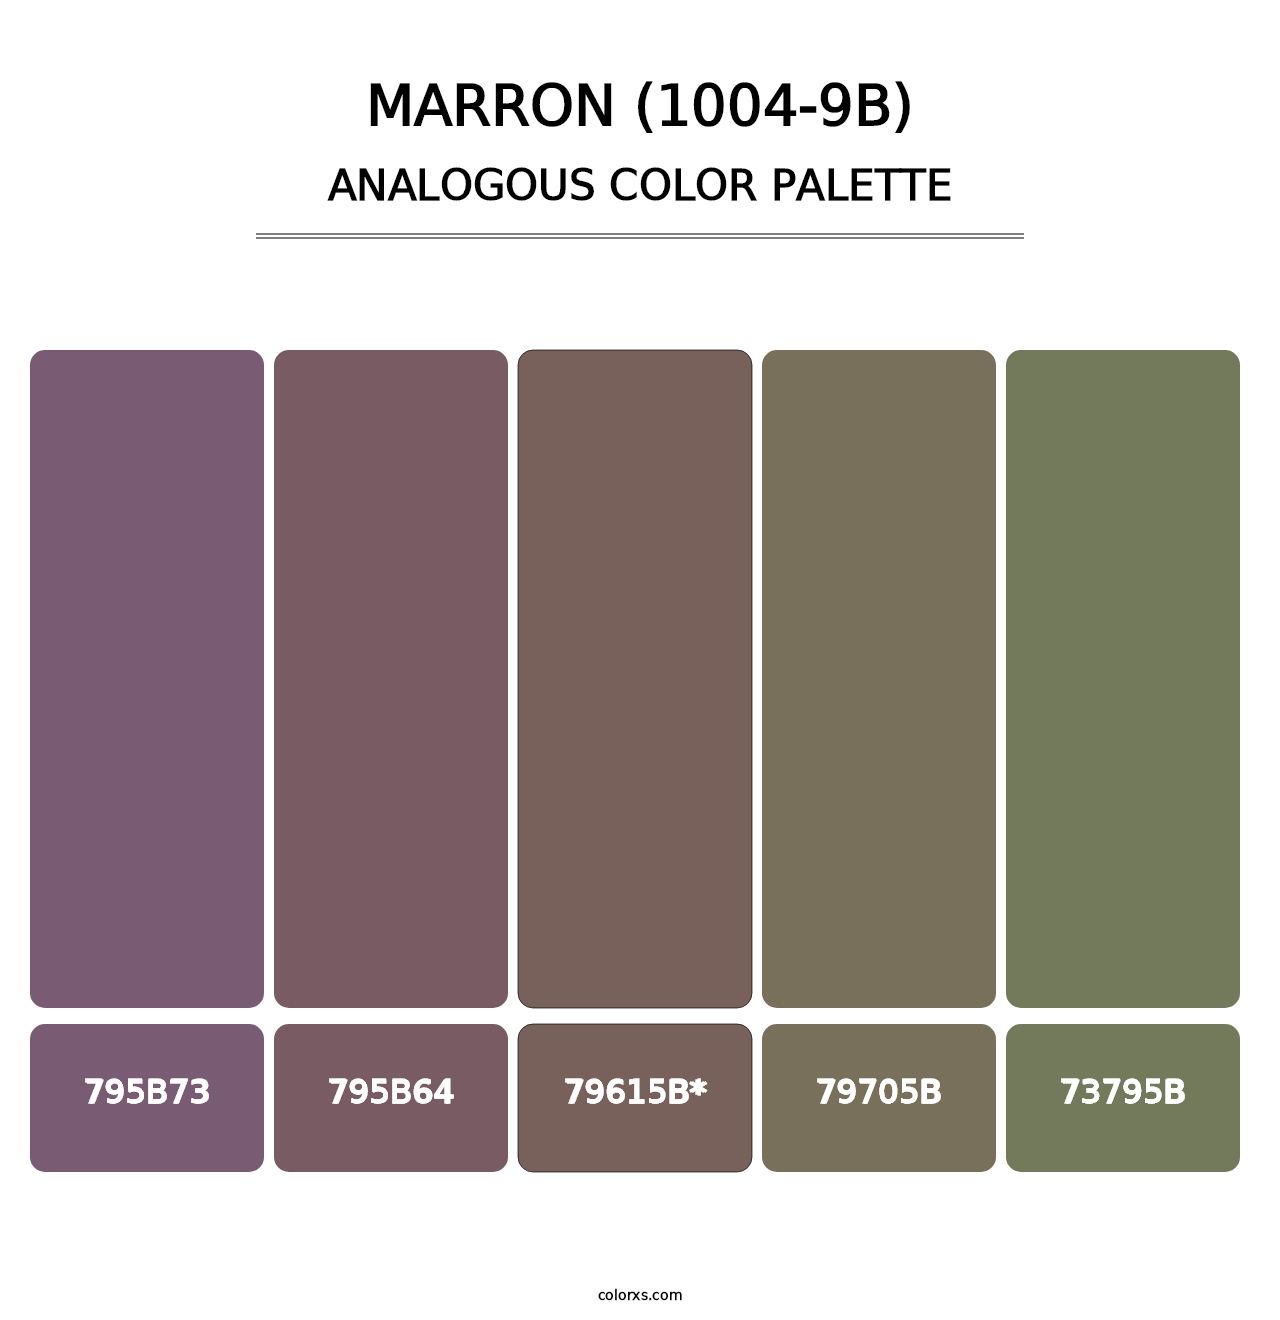 Marron (1004-9B) - Analogous Color Palette